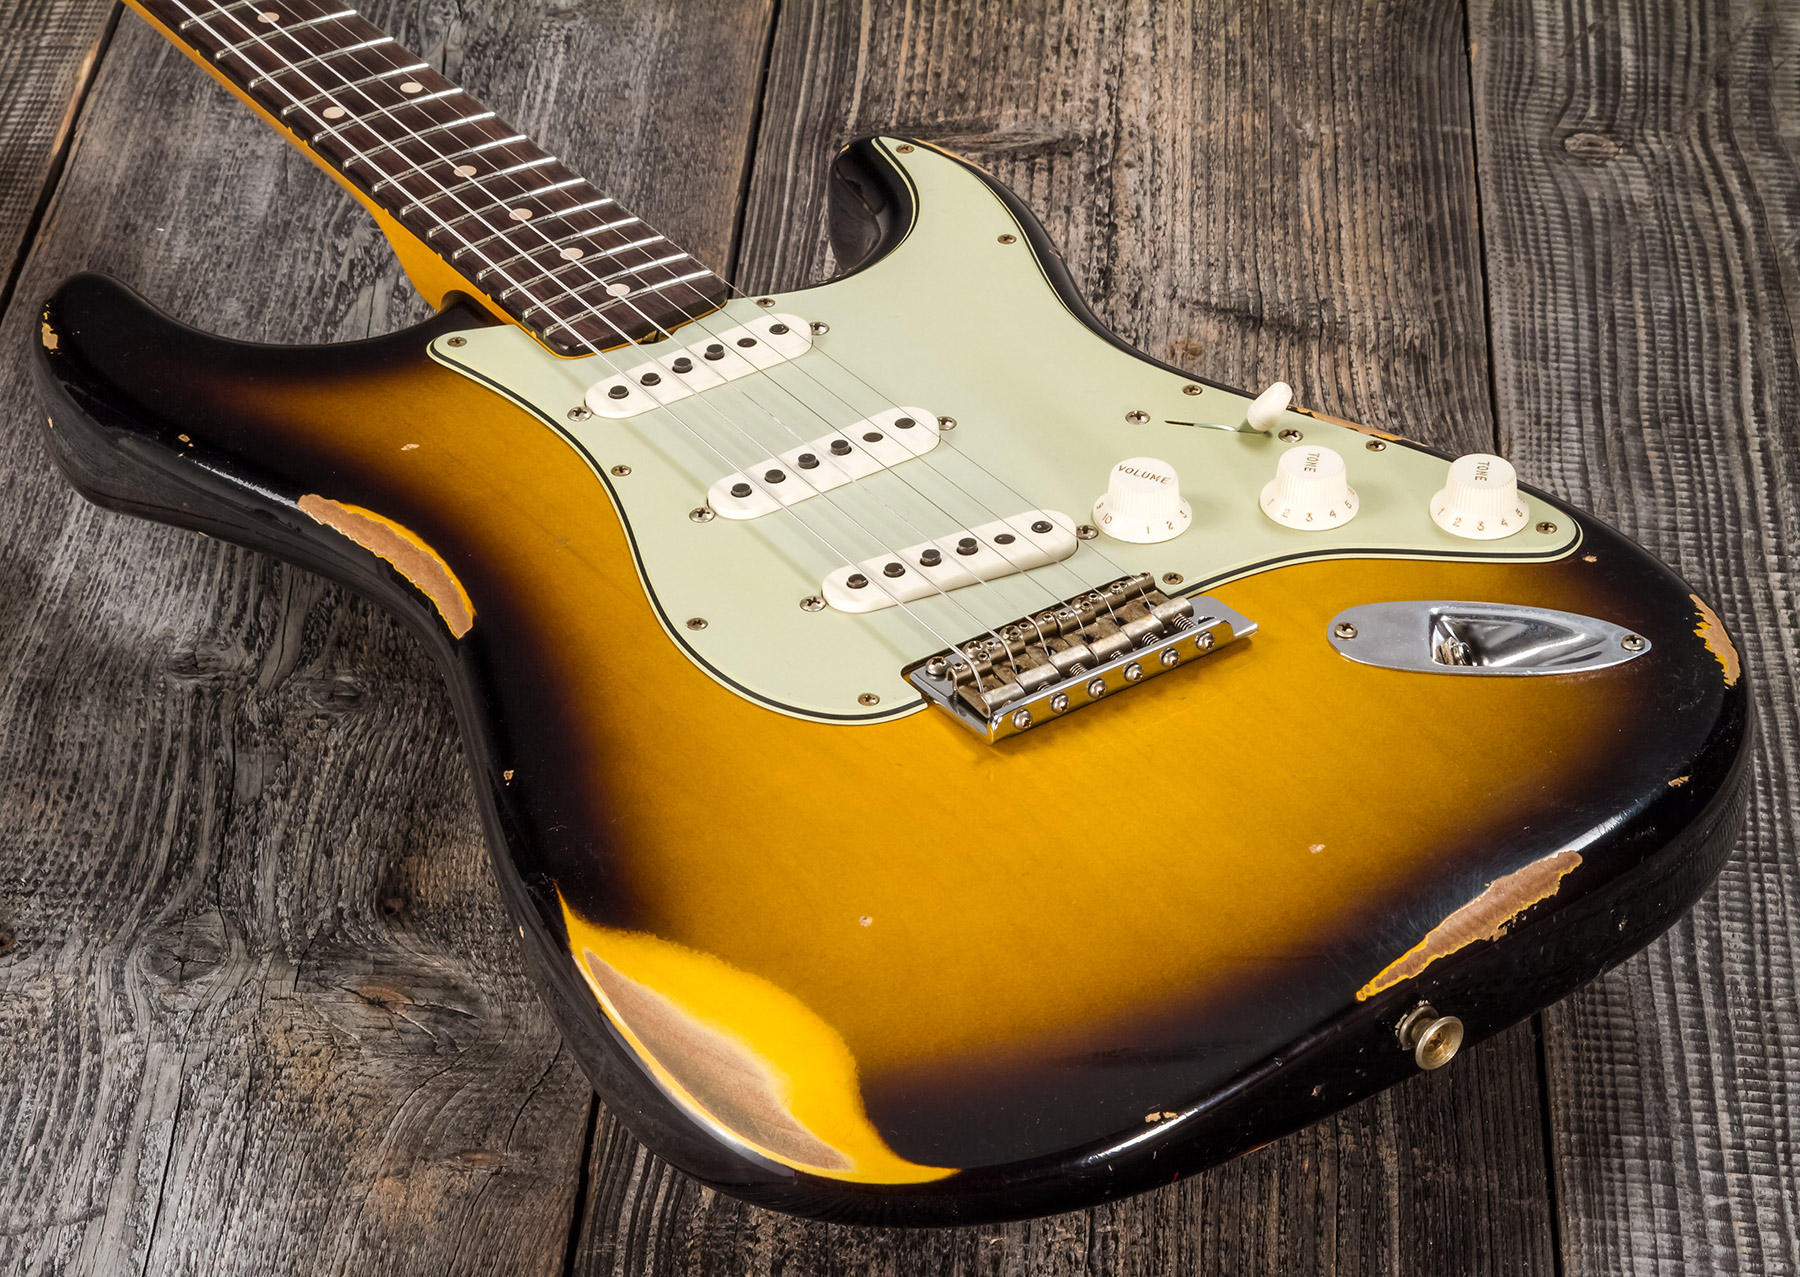 Fender Custom Shop Strat 1959 3s Trem Rw #r117661 - Relic 2-color Sunburst - E-Gitarre in Str-Form - Variation 3